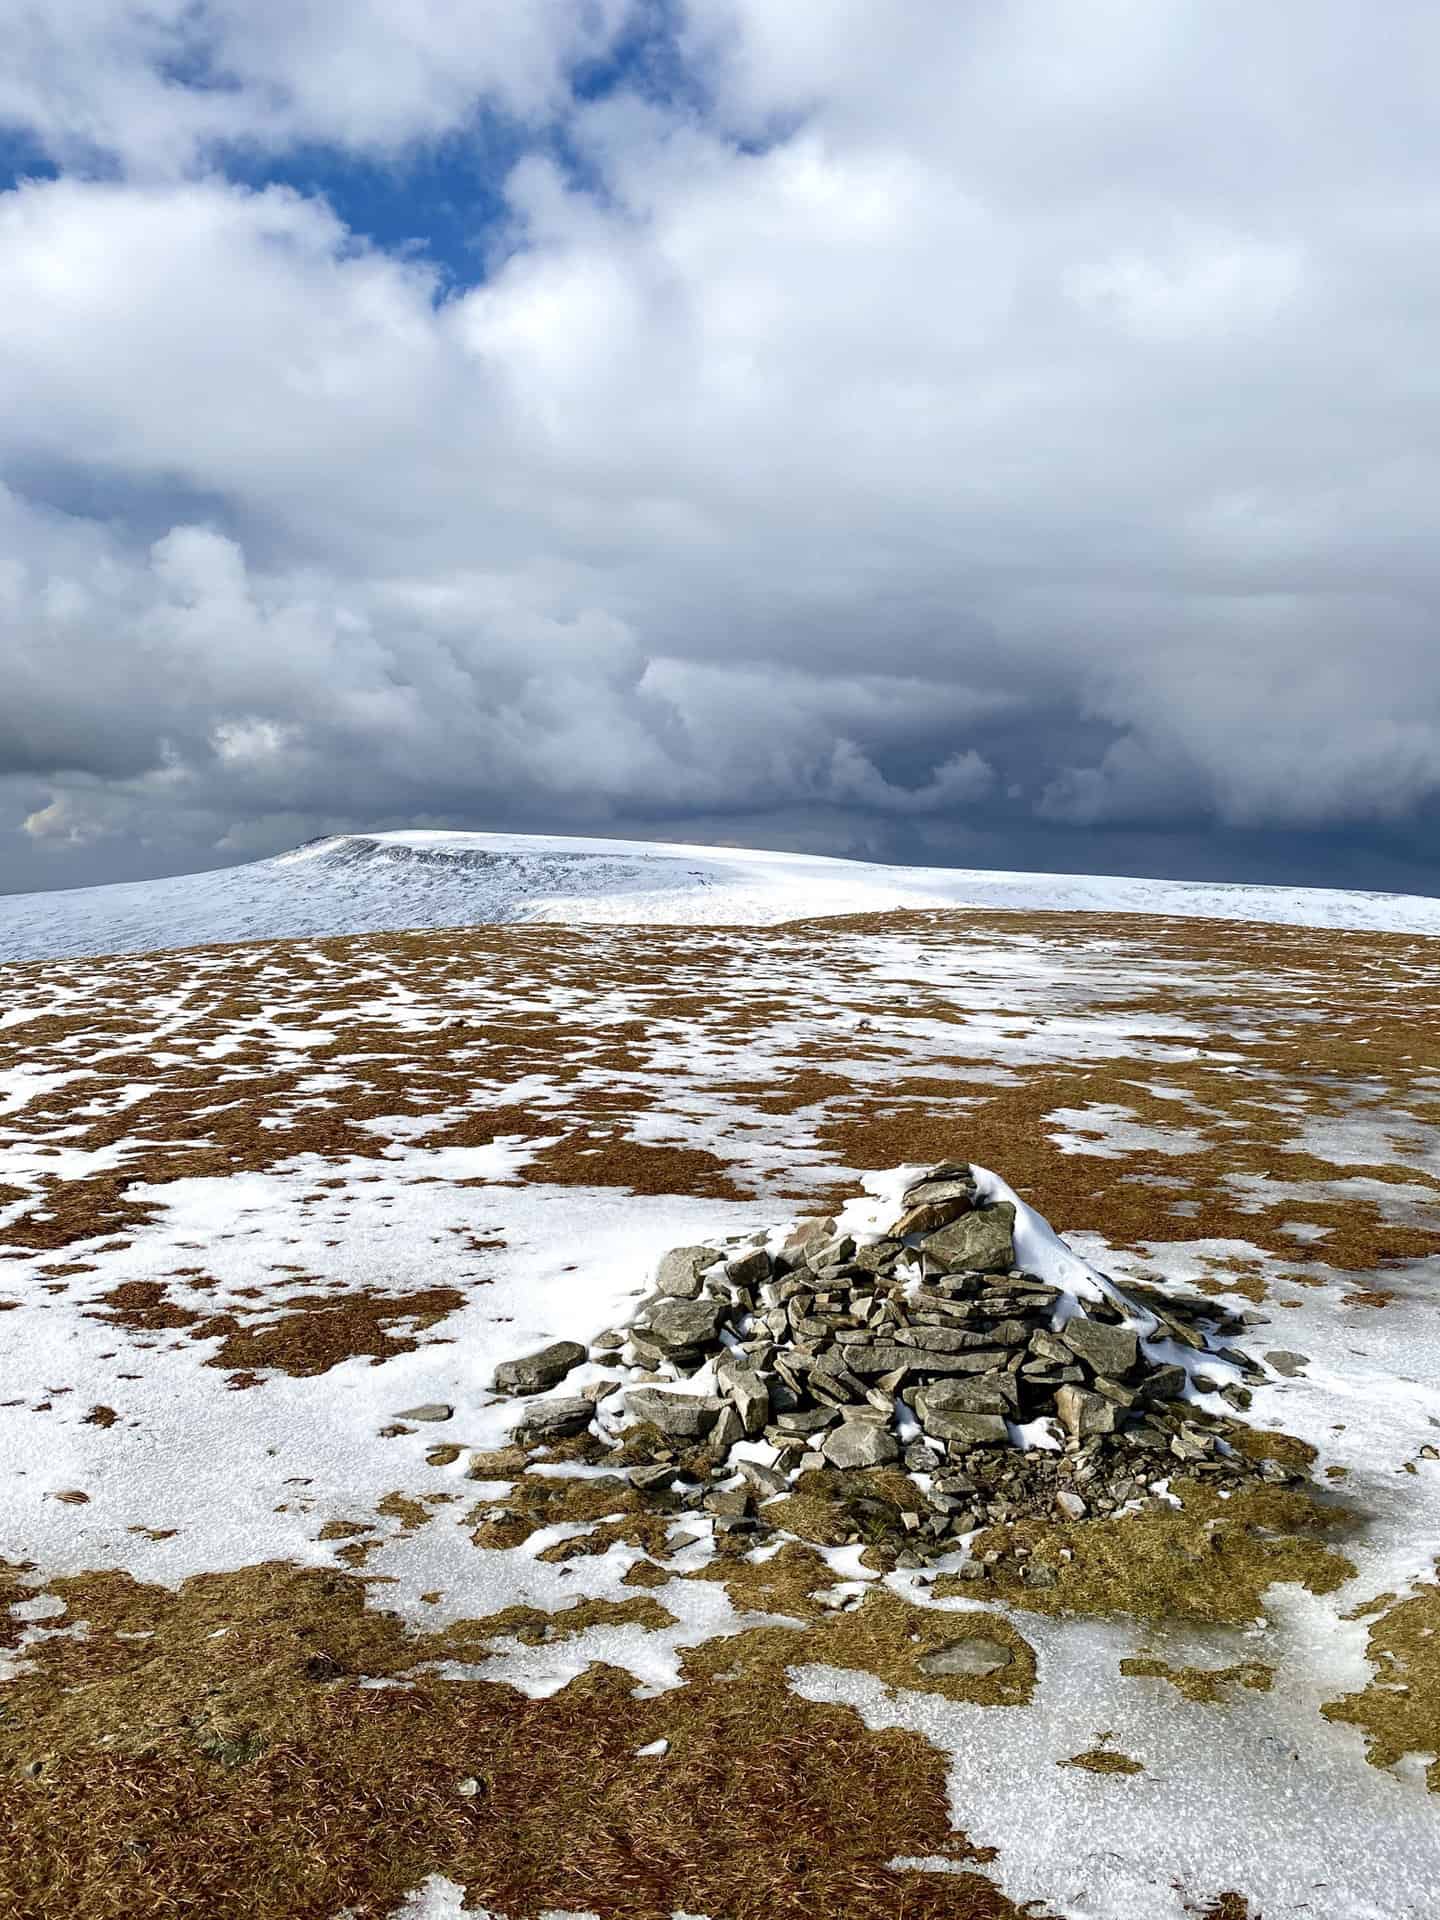 The summit of Little Dun Fell, height 842 metres (2762 feet).